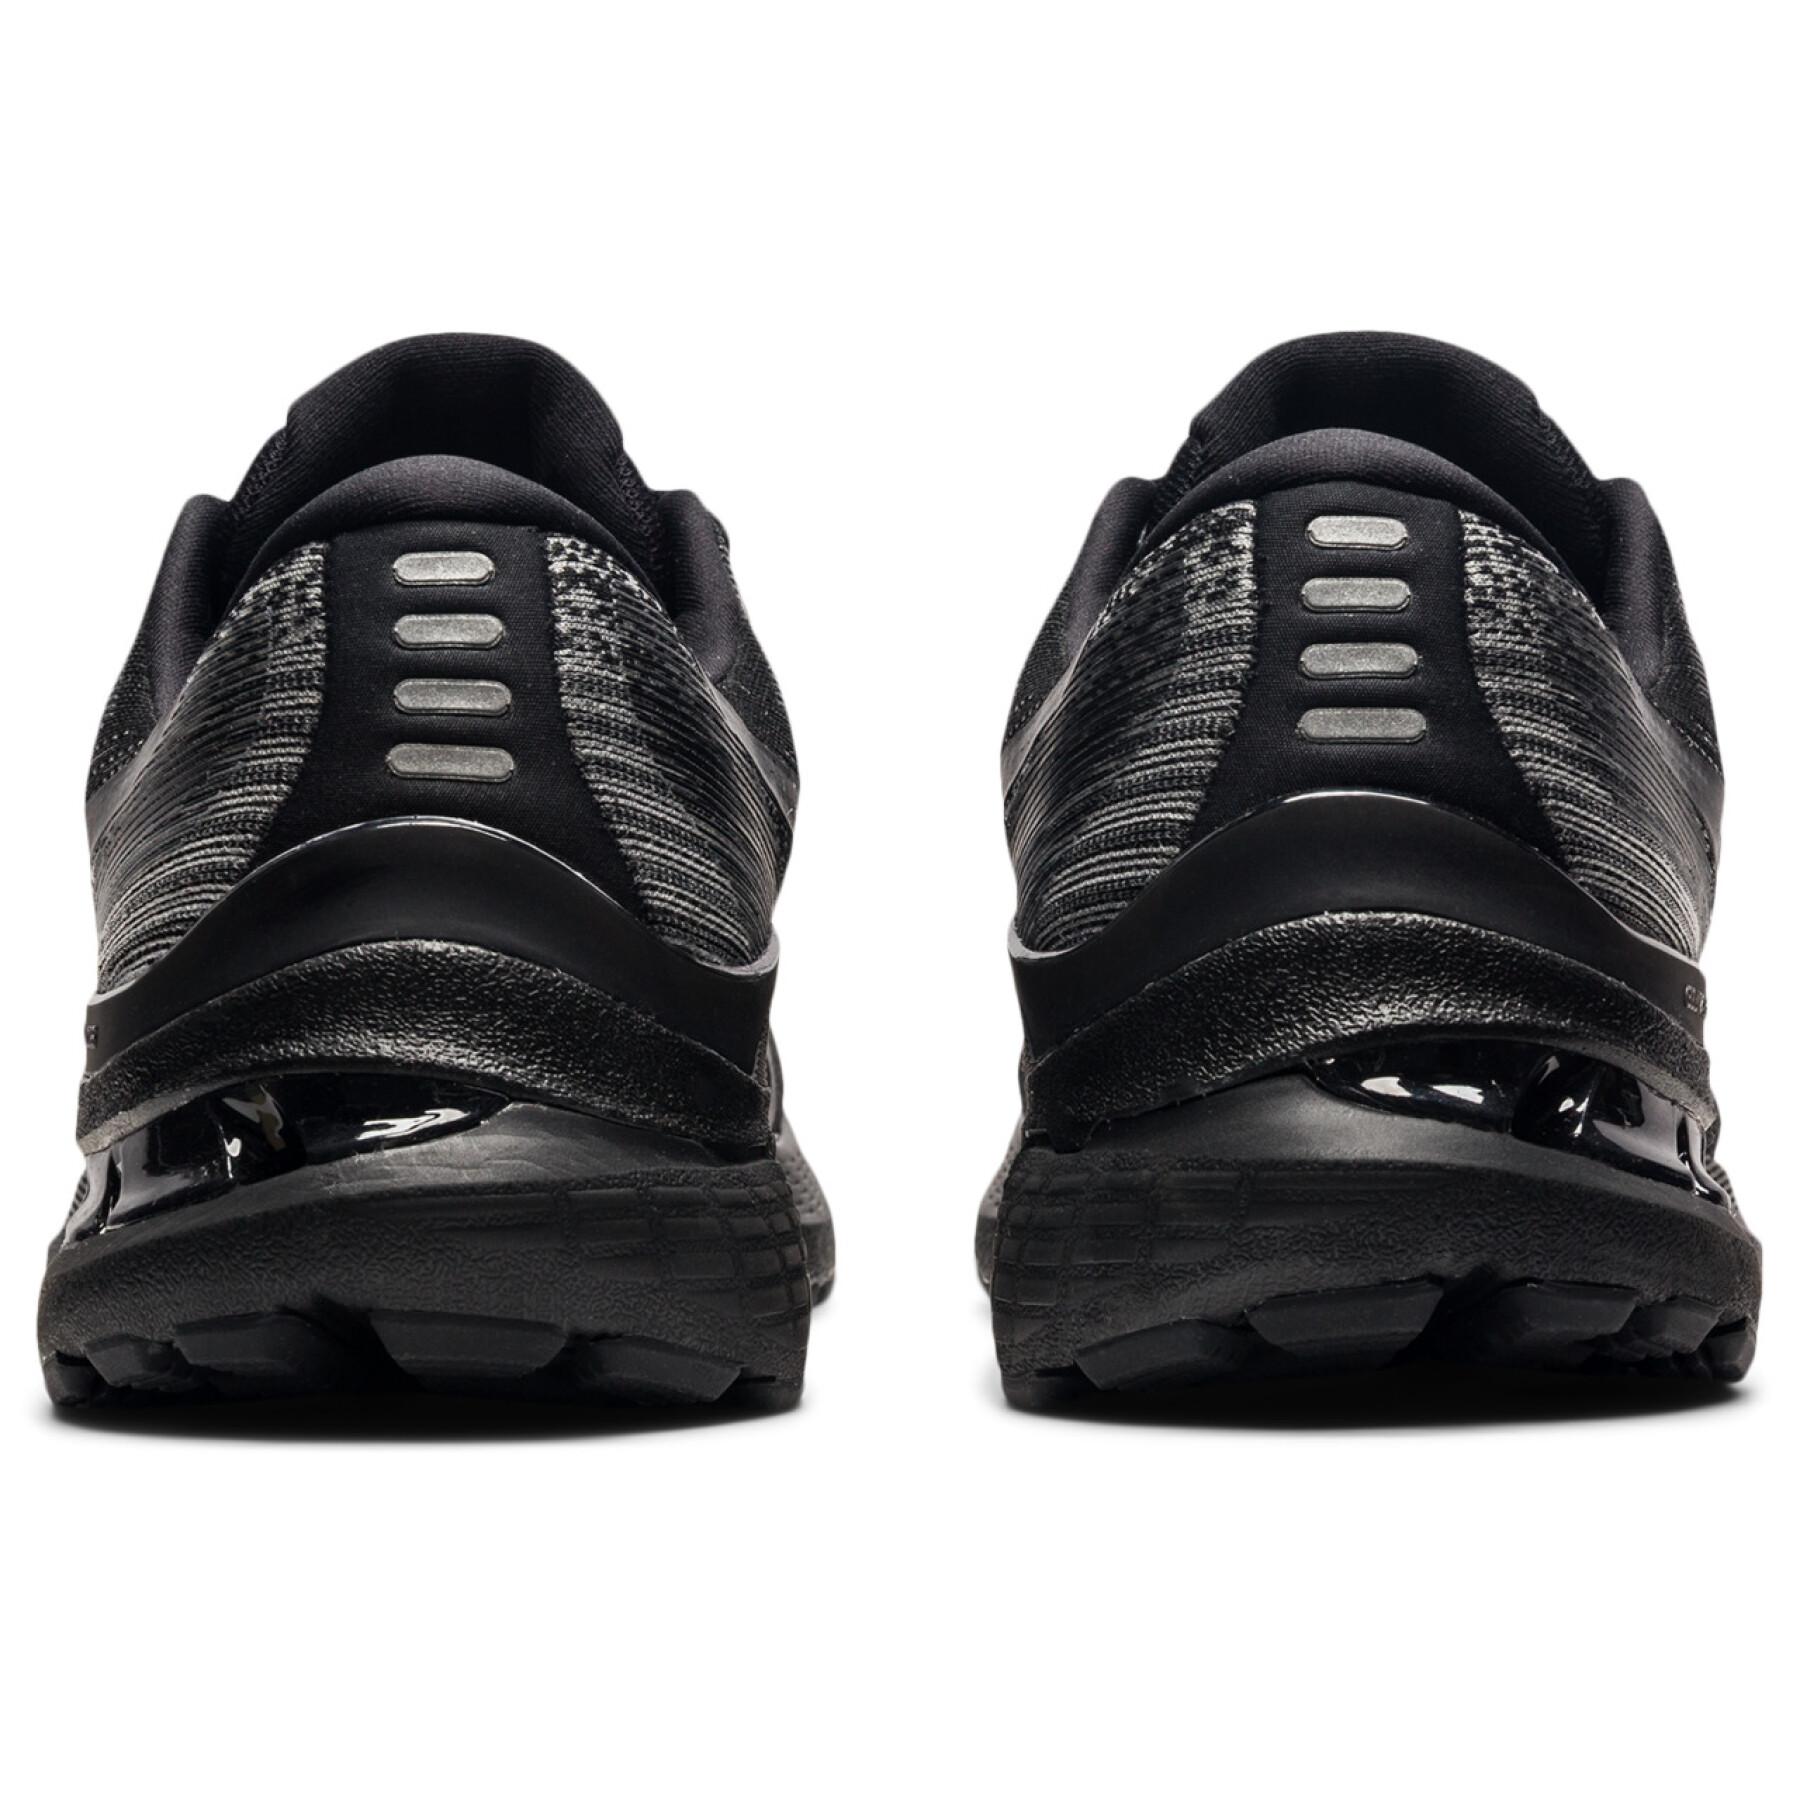 Chaussures de running Asics Gel-Kayano 28